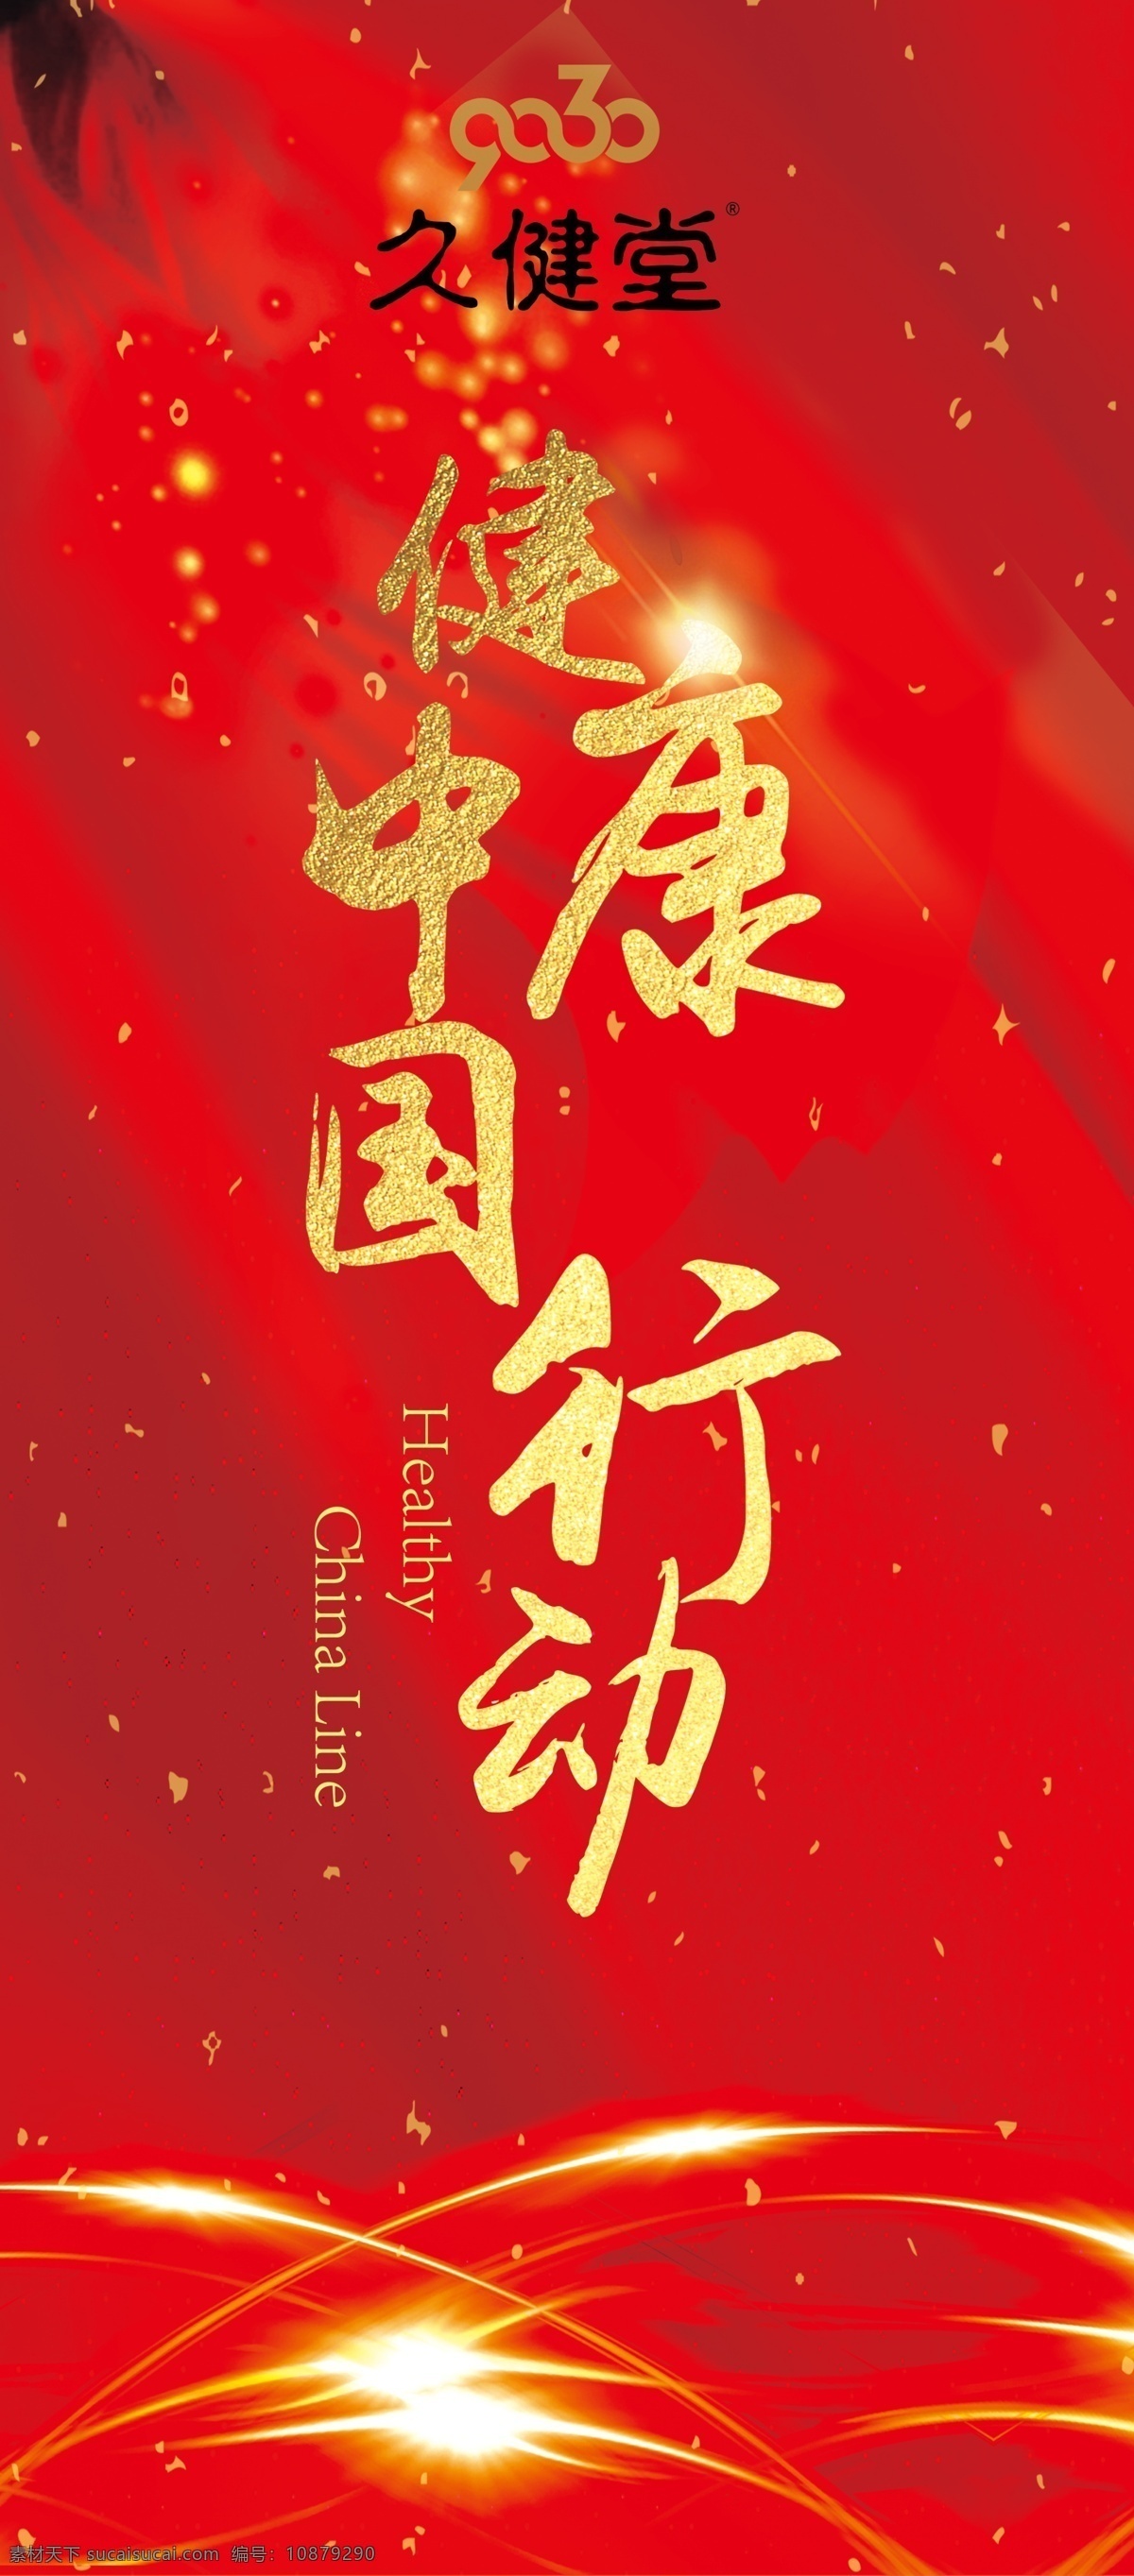 公益展架 健康中国行 红色背景 光芒 公益 金色字 展板模板